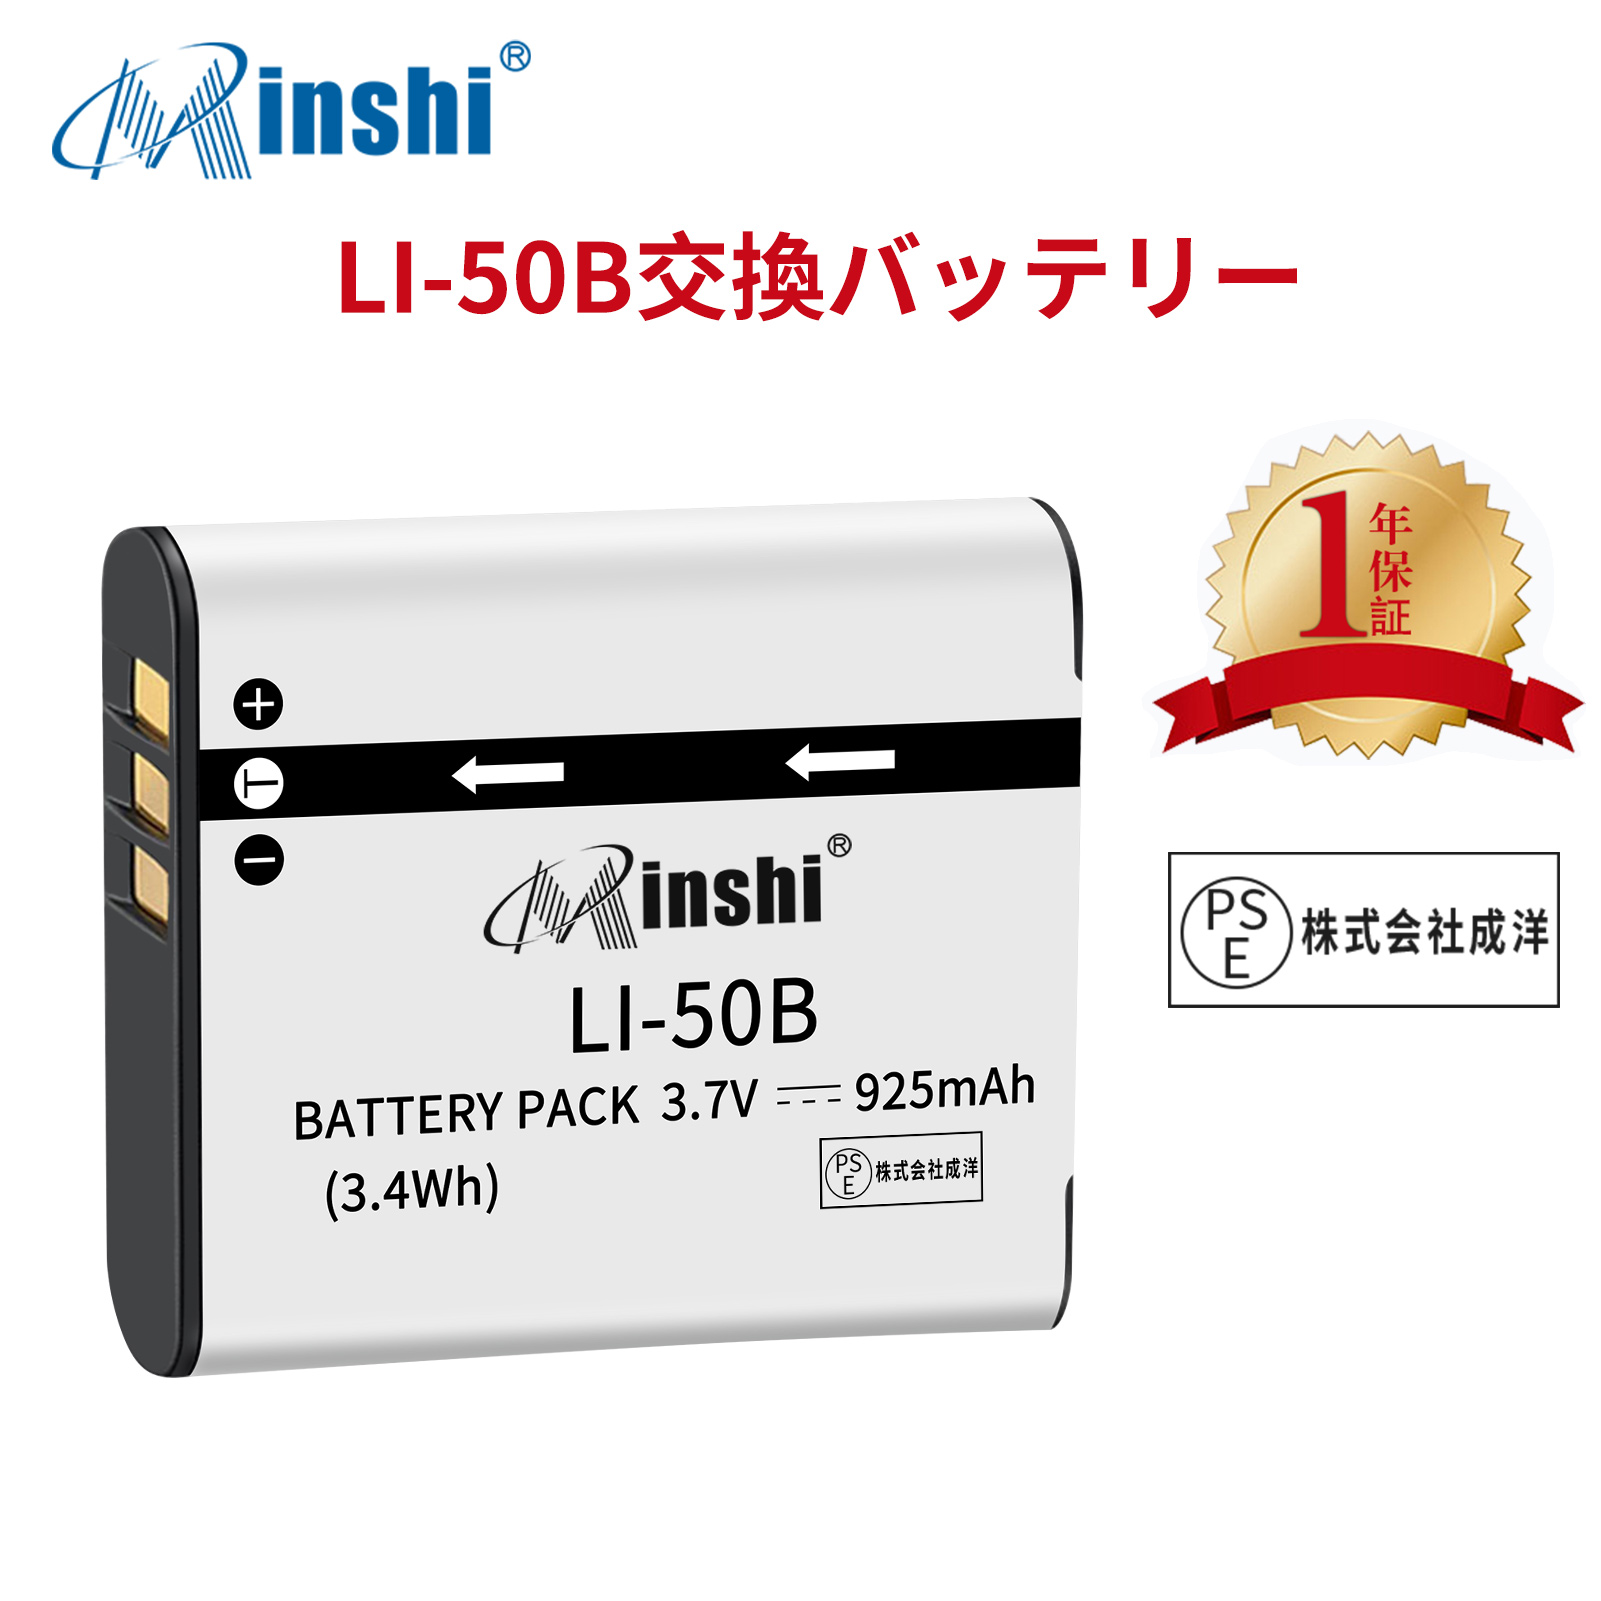 【1年保証】minshi OLYMPUS TG-820 【925mAh 3.7V】PSE認定済 高品質 LI-50B 交換用バッテリー